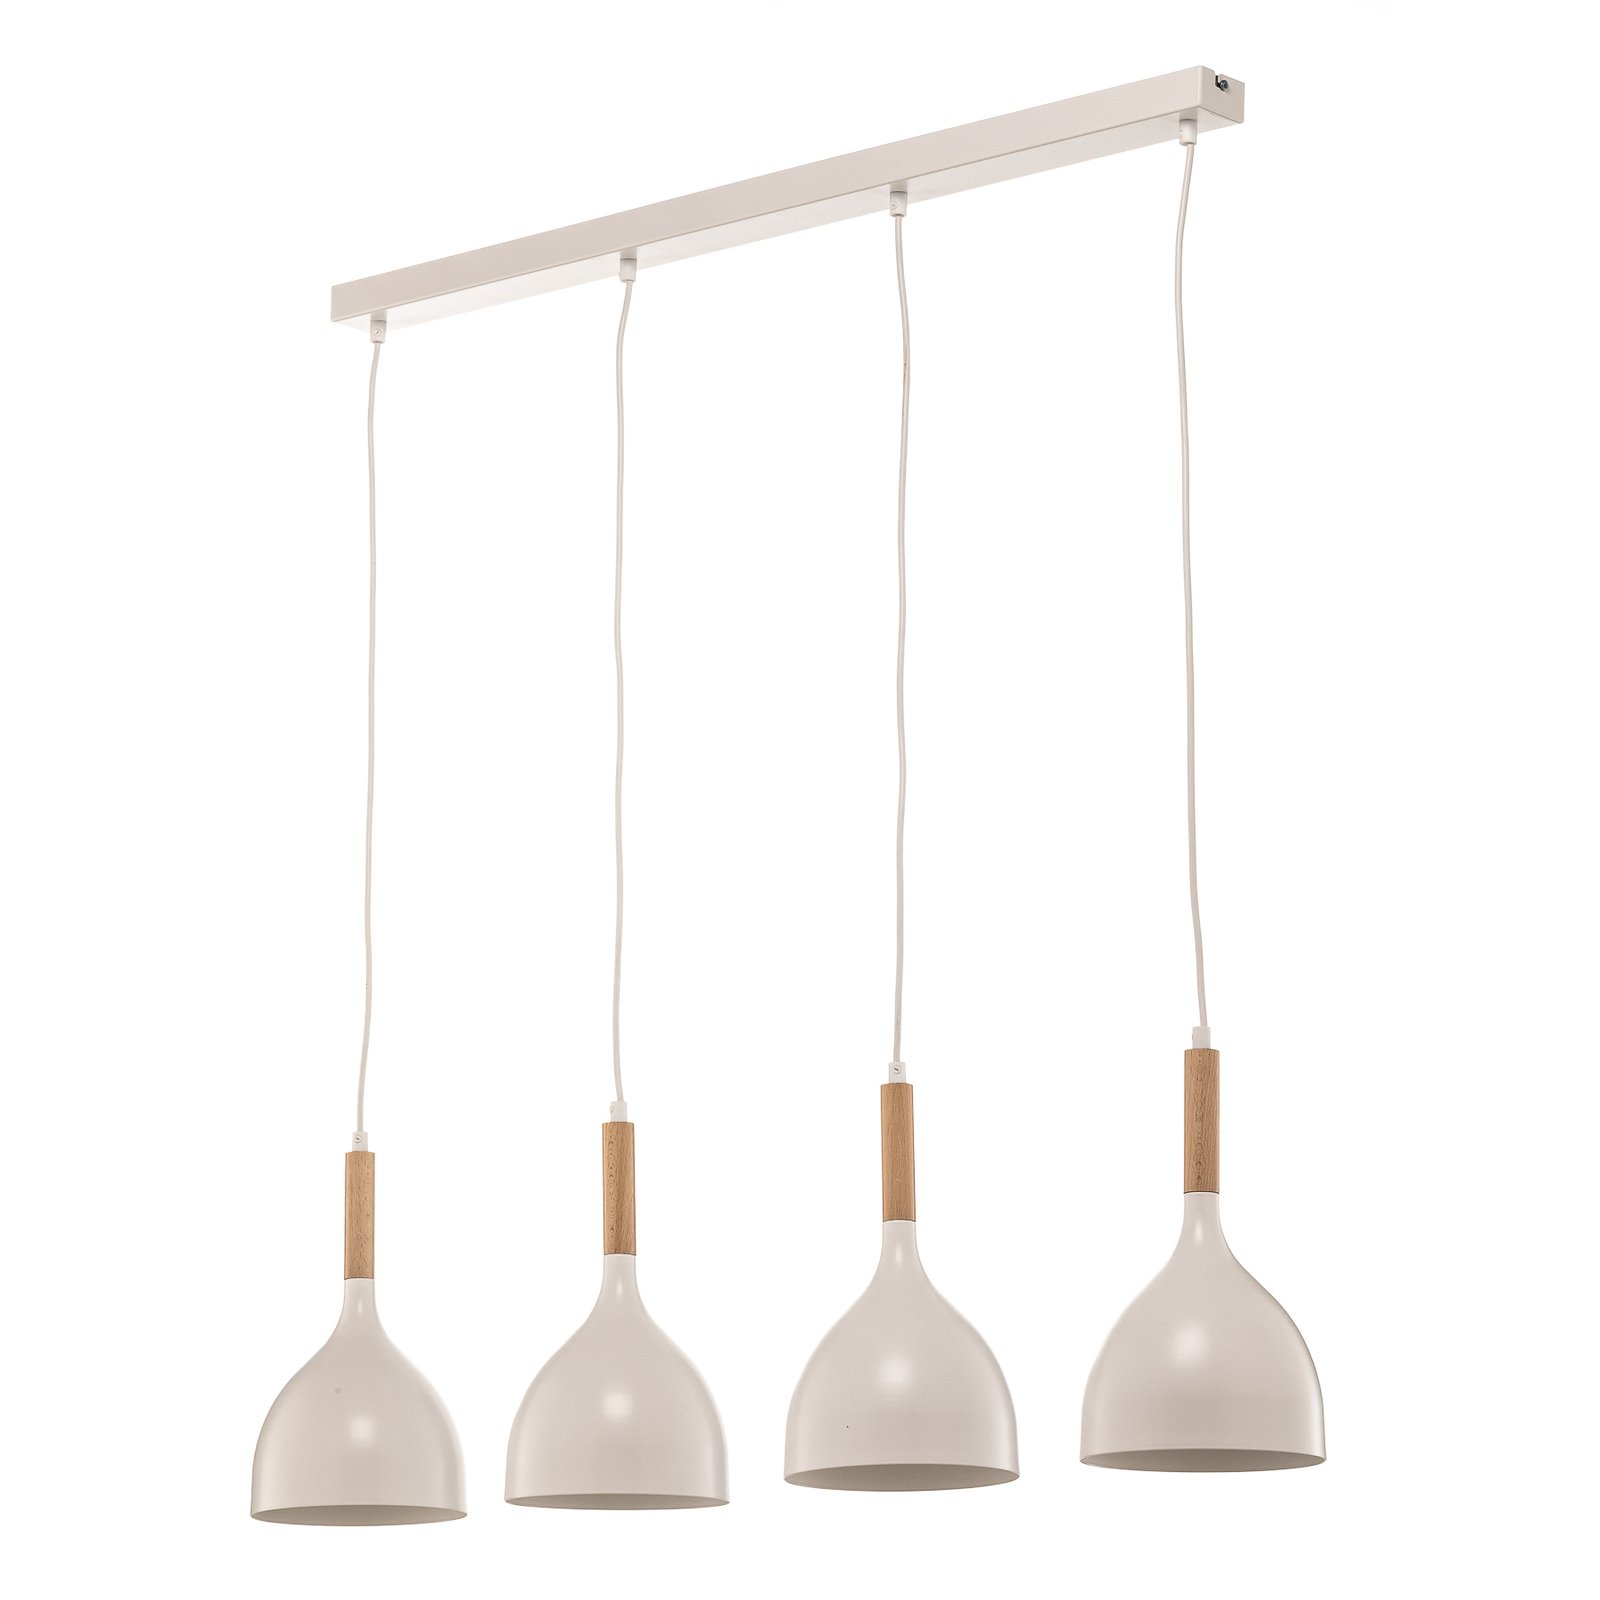 Noak hanglamp 4-lamps lang wit/naturel hout